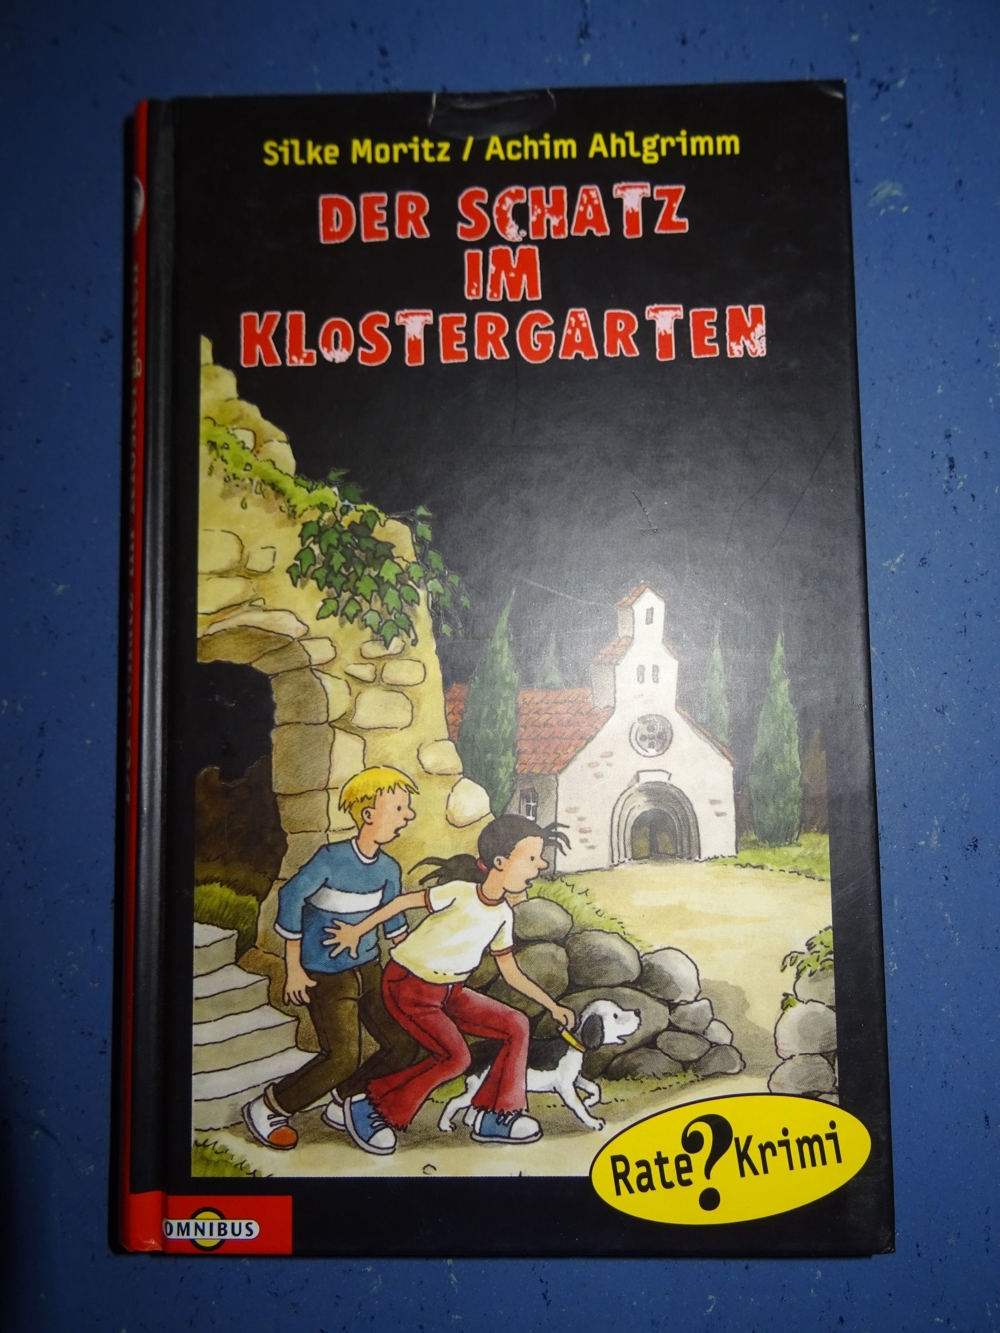 [Inkl. Versand] Der Schatz im Klostergarten - Kinderbuch ab 10 von Ahlgrimm, Achim; Moritz, Silke